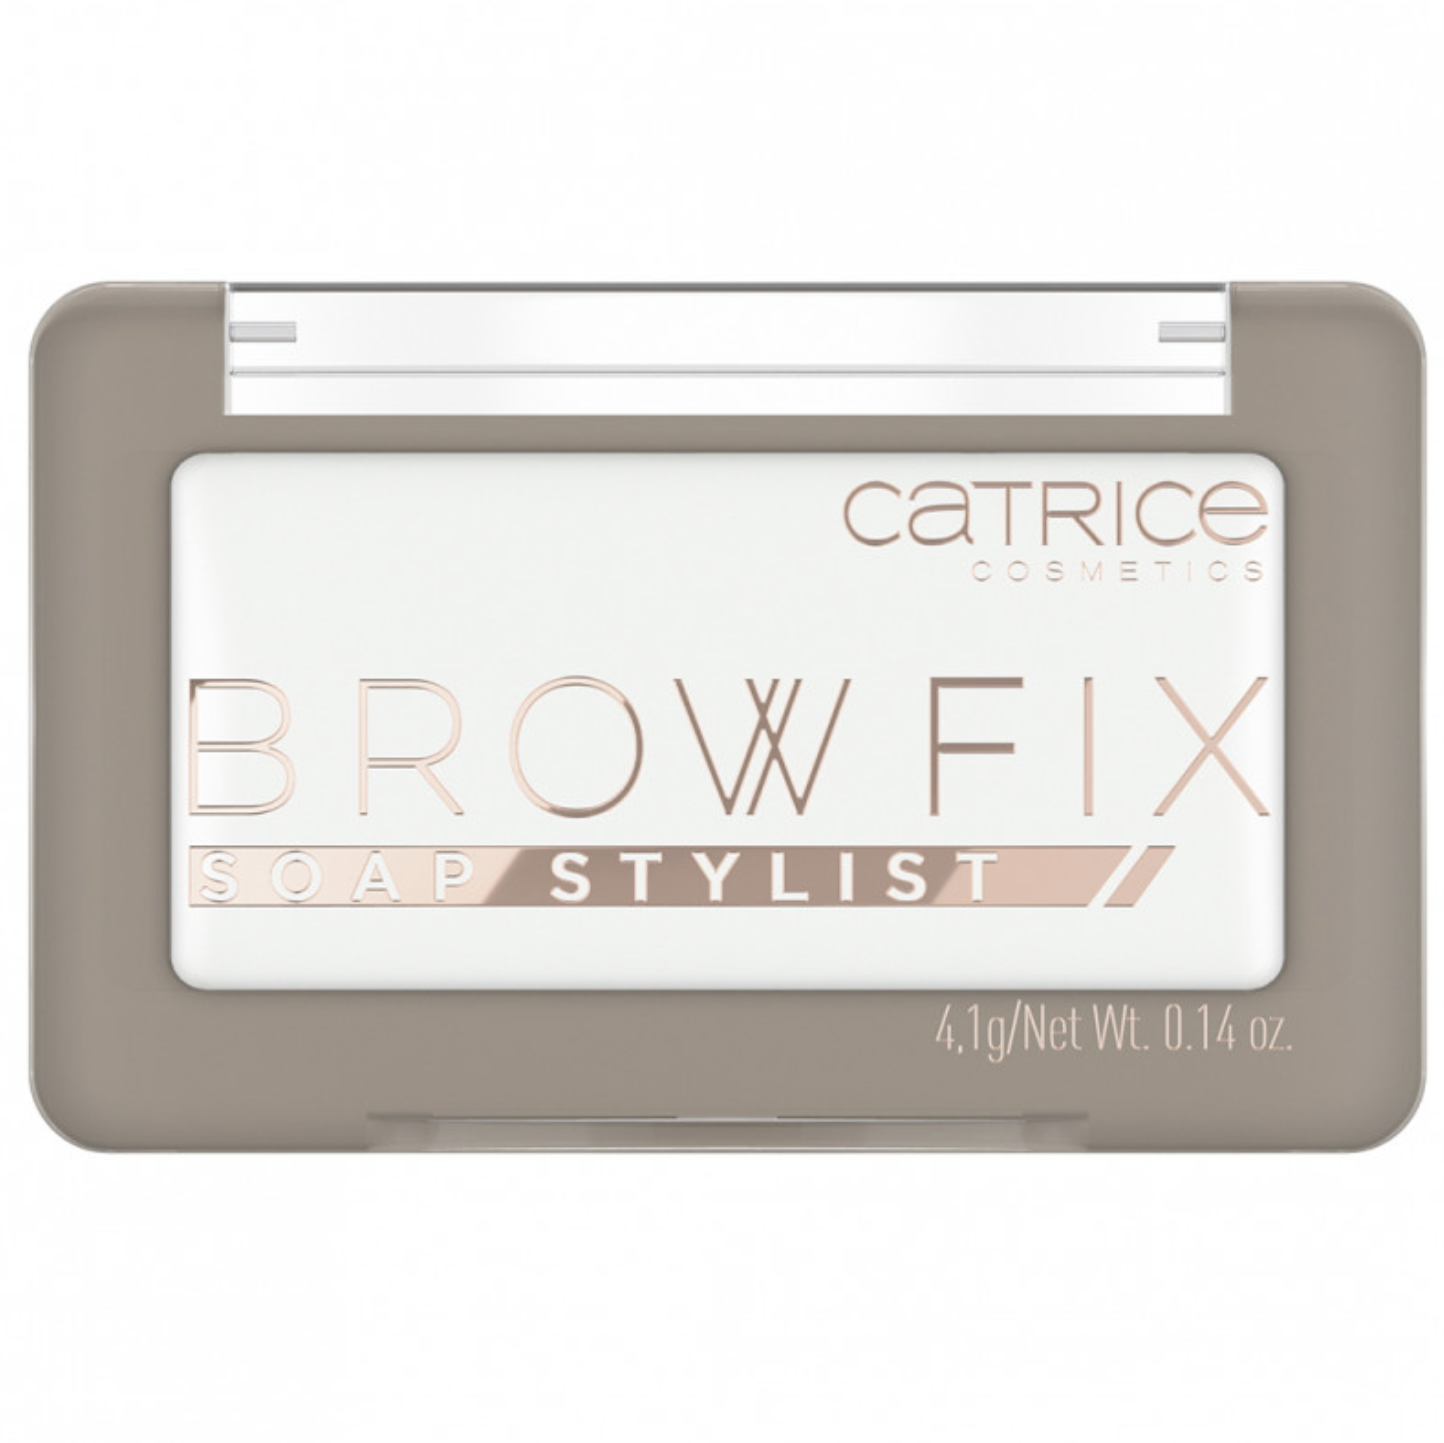   / Catrice -     Brow Fix Soap Stylist  10, 4,1 